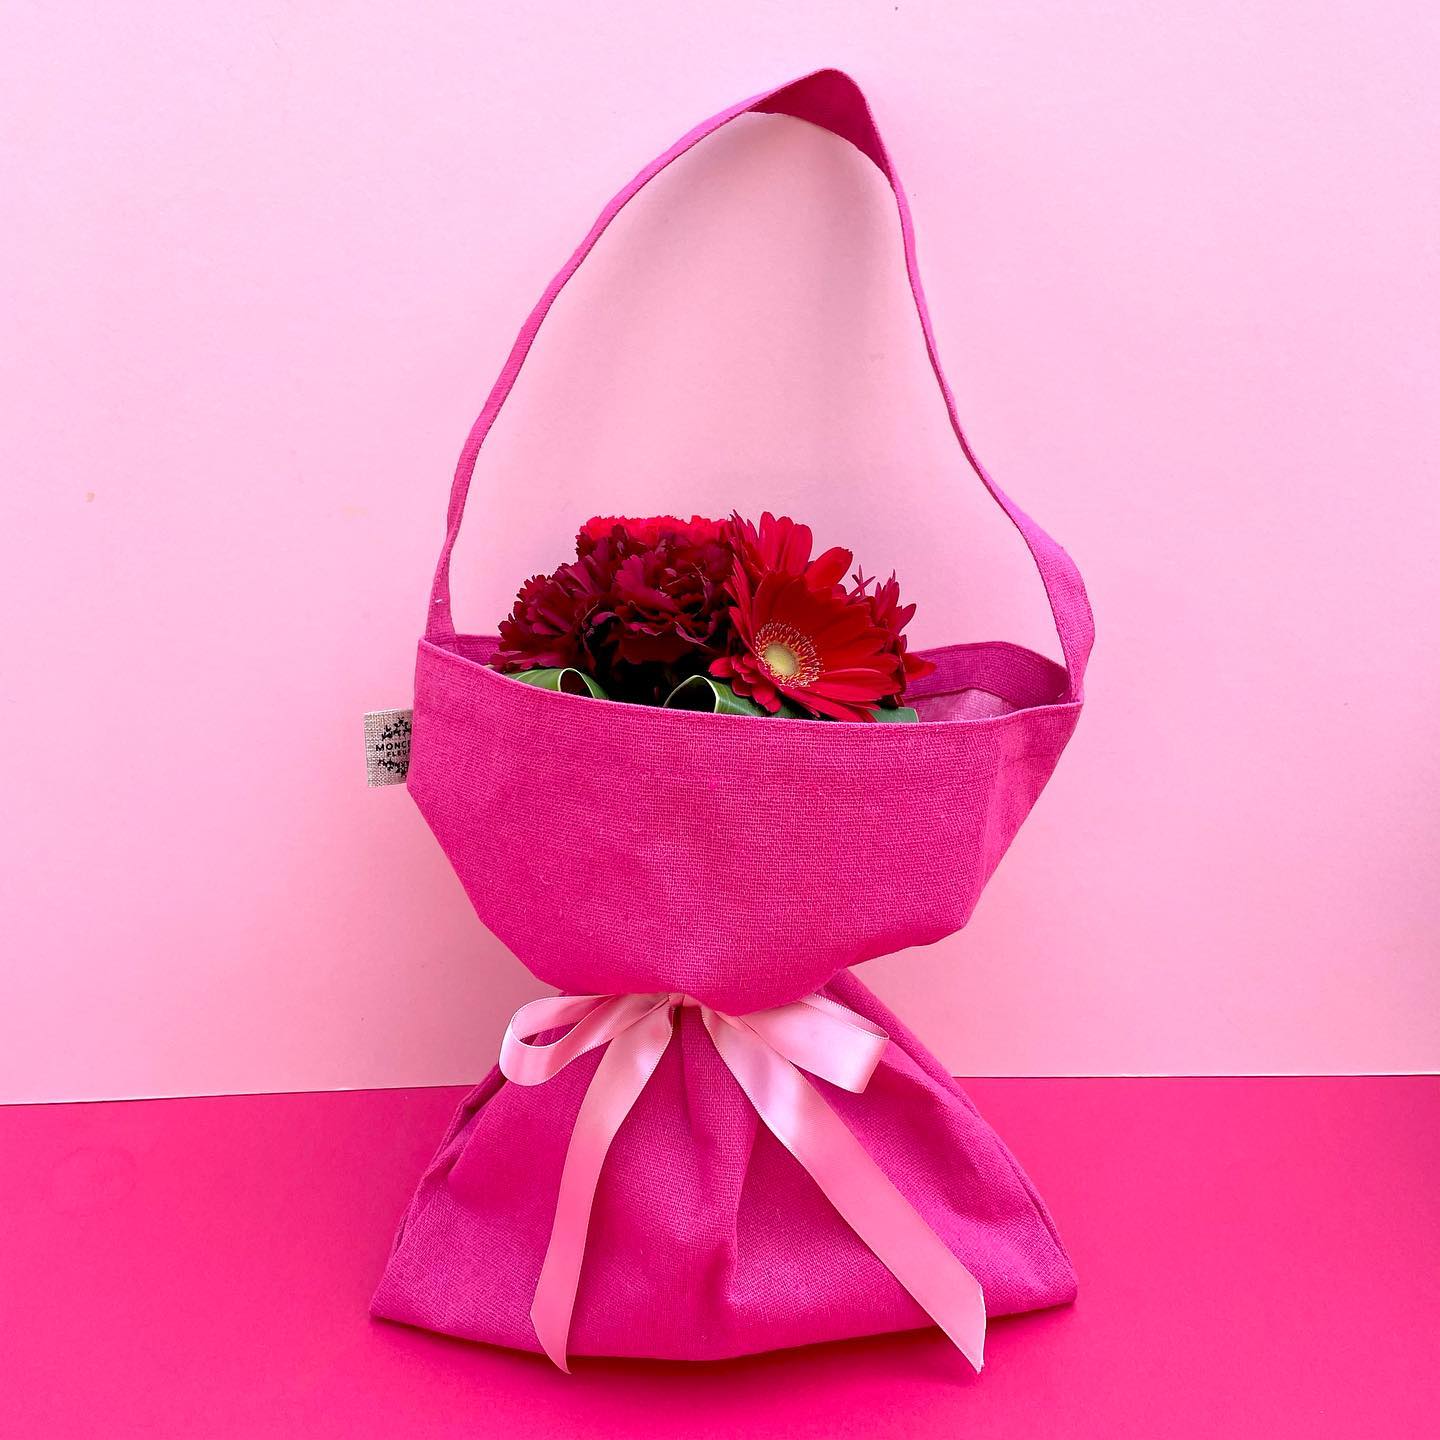 Happy Mother’s Day!

＊＊＊＊＊＊＊＊＊＊＊＊
D.Espoir Rouge
¥3,850（送料別）

母の日の主役・カーネーションに「感謝」「希望」の花言葉を持つガーベラをプラス！

カーネーションとガーベラのブーケを、ボタンで長さを変えられる花束用エコバッグでラッピングしました。

中にはお水代わりのゼリーが入ったプラスチックの花瓶付き。
ラッピングしたまま飾って楽しんでいただけます。

エコバッグの内側は防水加工になっていて、長い丈のお花のお買い物の時に便利！

一部の店舗を除いたモンソーフルール店舗では、来年の母の日前日まで、こちらのエコバッグを持ってきた方、切花がなんと10％OFF！いつでも、何度でもOK！こちらの袋に入らないサイズのお花でも、もちろんOKです♪
（ただしご自宅用に限ります）

母の日当日だけでなく、365日お花のある生活をお母さんにプレゼントしませんか？

サイズ：φ15㎝、高さ25㎝